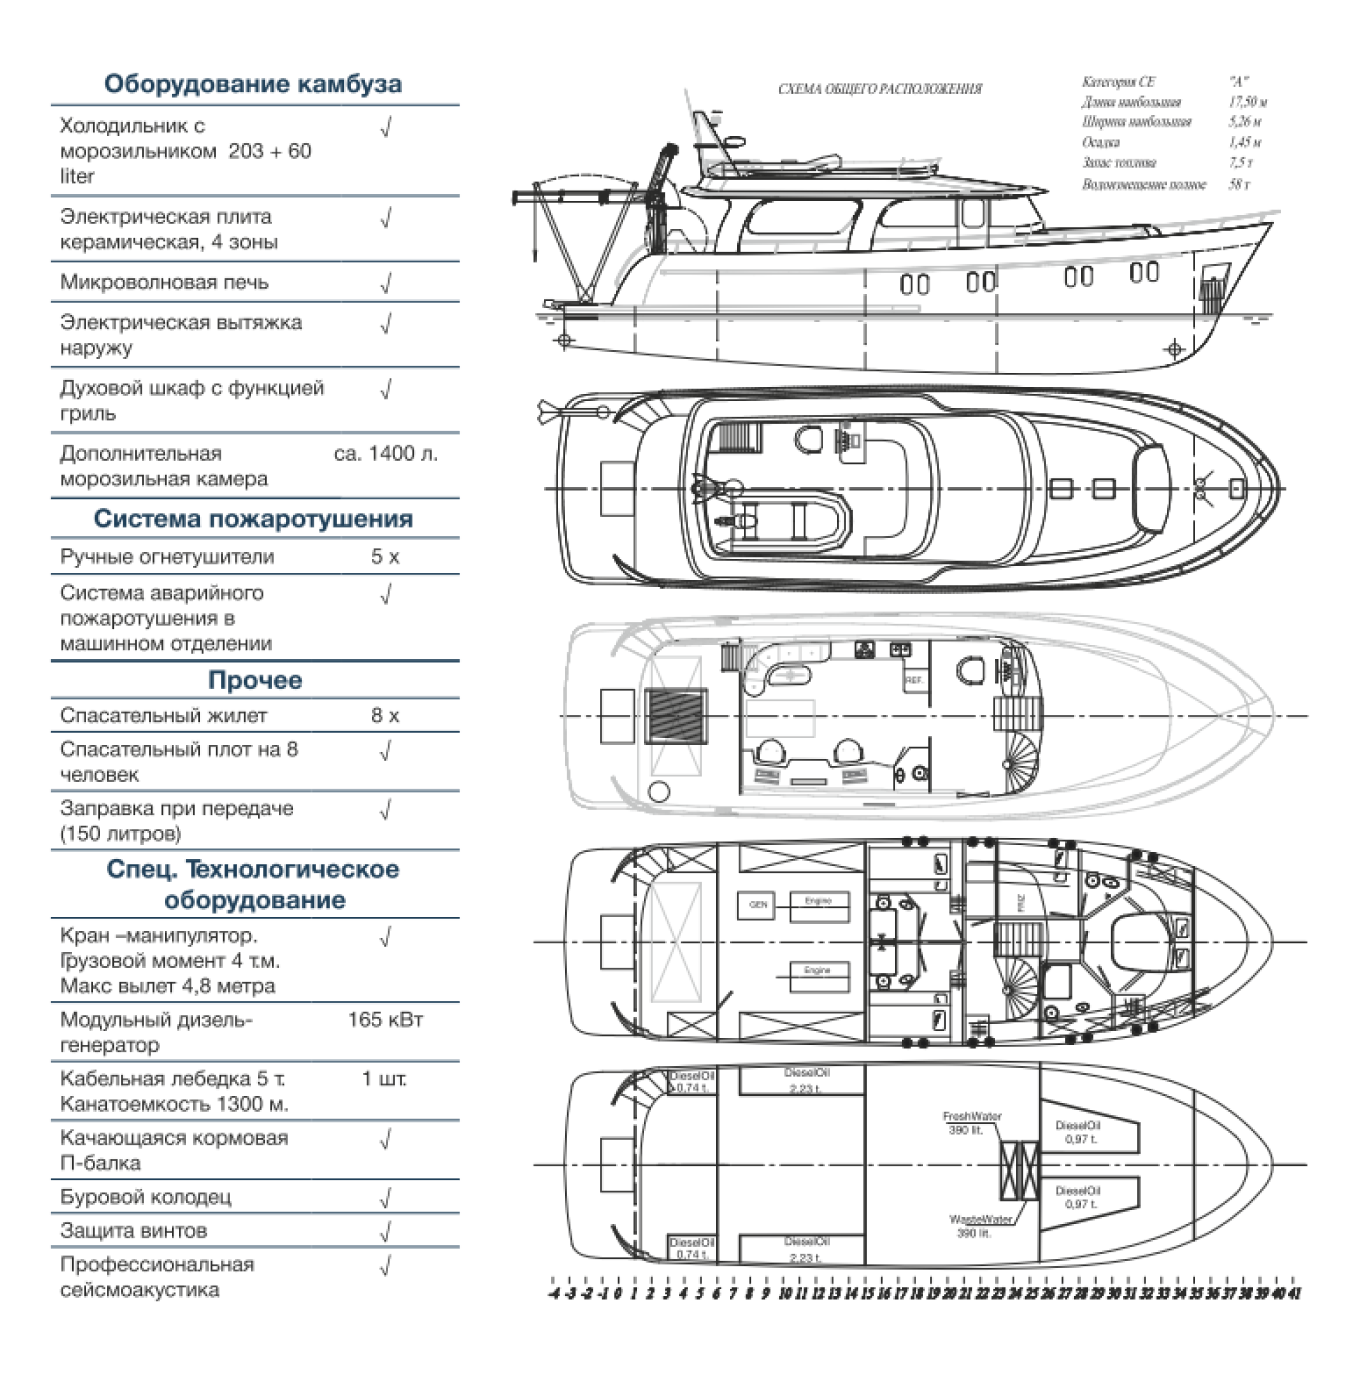 Образец схемы жизнеобеспечения и специального технологического оборудования на судне